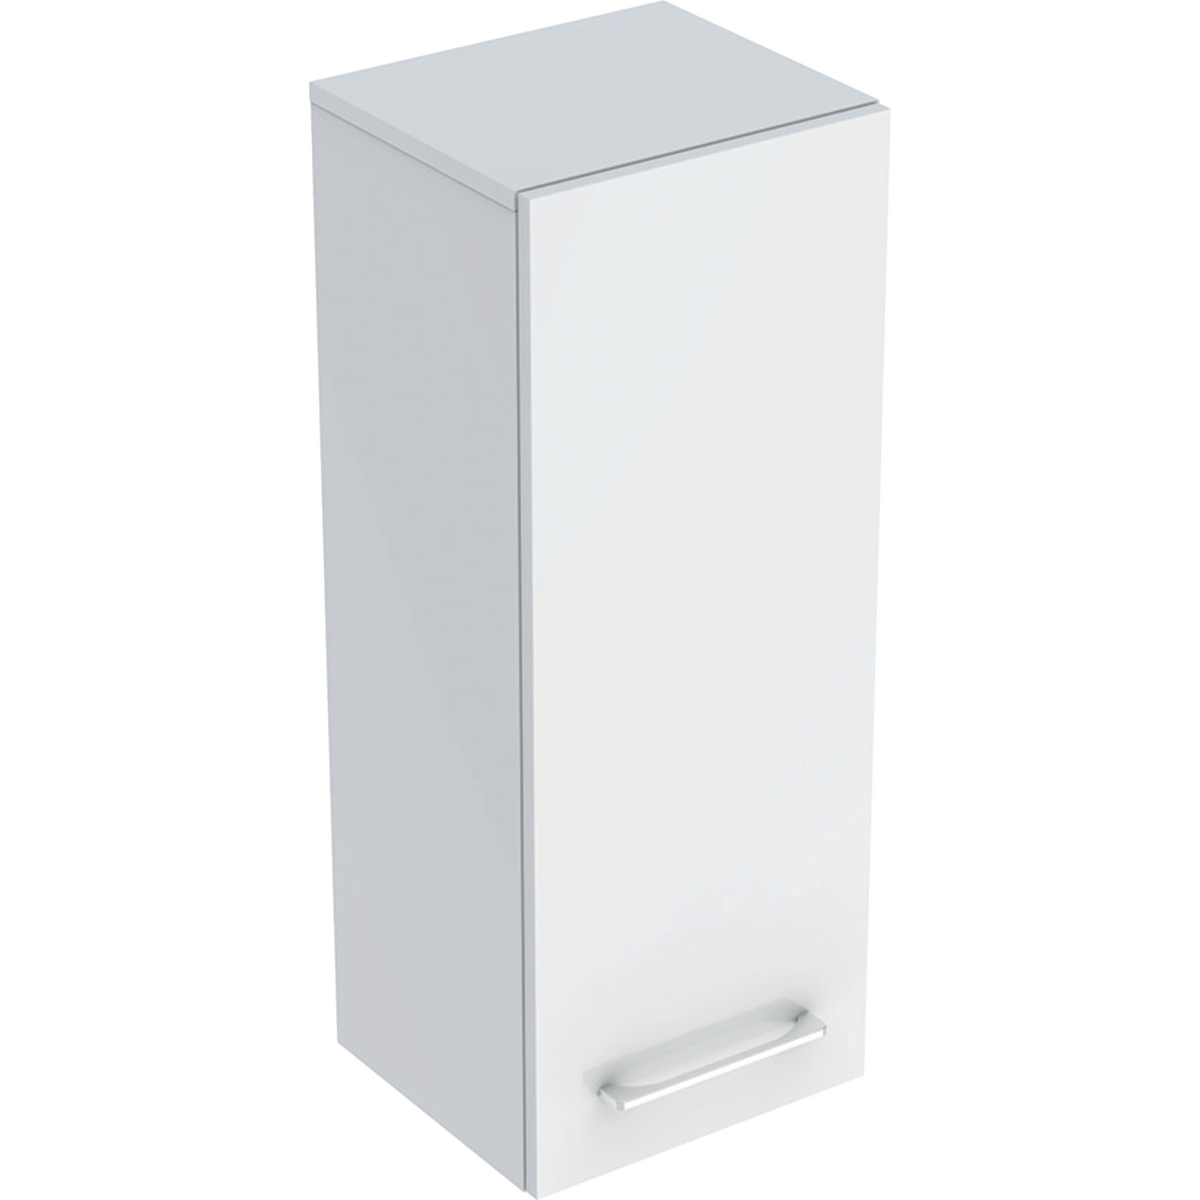 Geberit 501276001 Square S Medium Cabinet with One Door - White